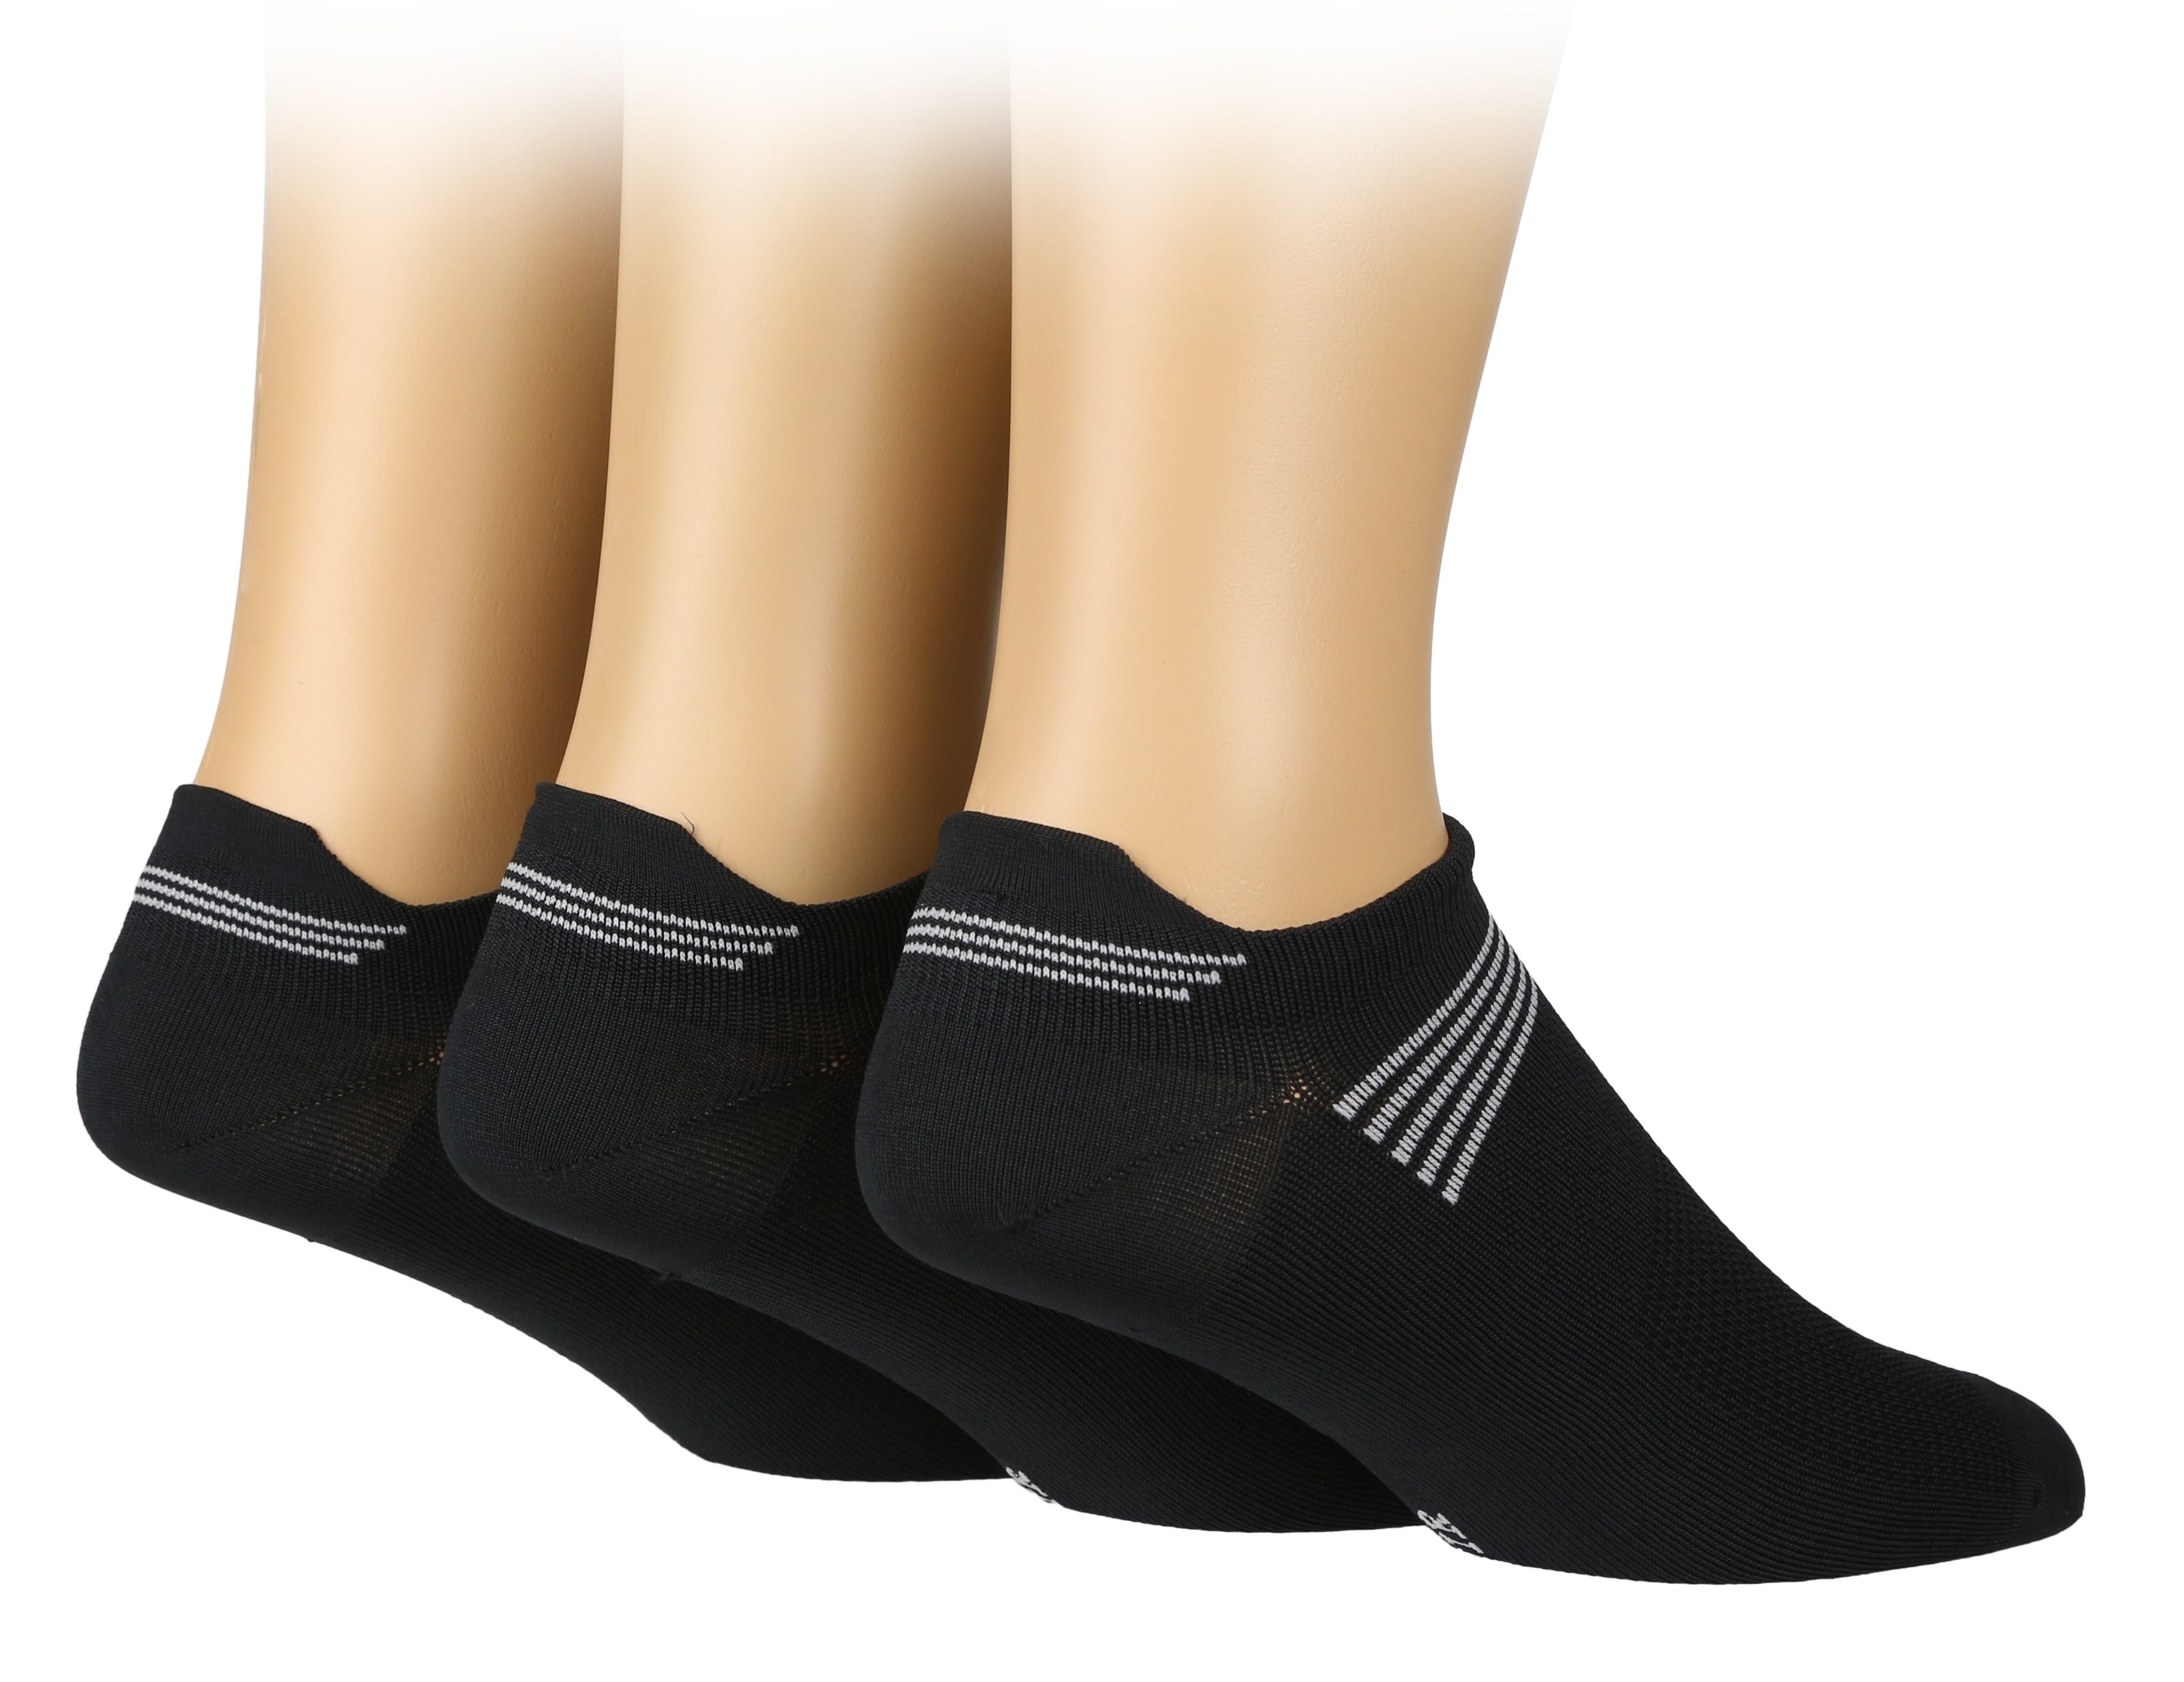 GLENMUIR 3PK Compression Trainer Sport Socks - Mens 6-11